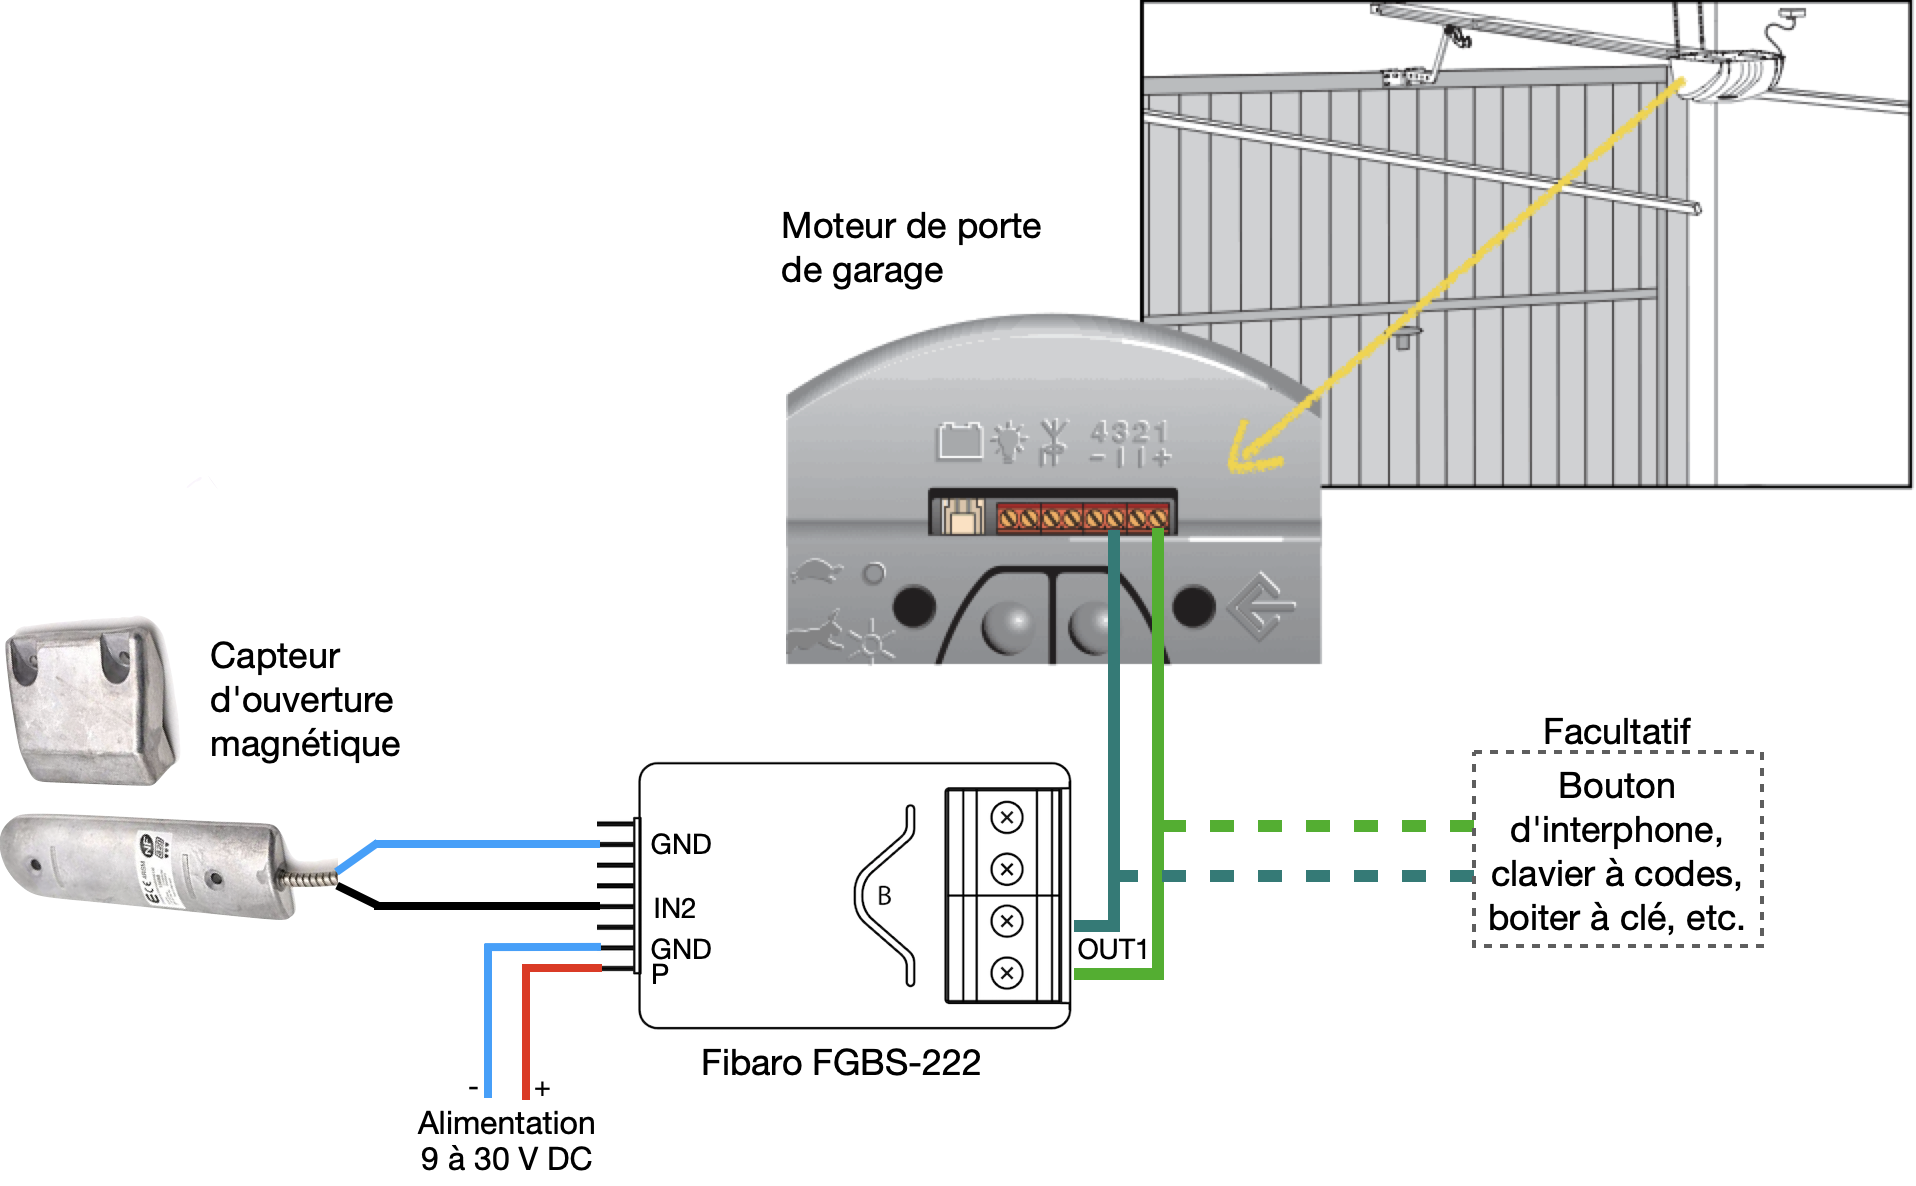 Câblage du Fibaro FGBS-222 sur un moteur de porte de garage